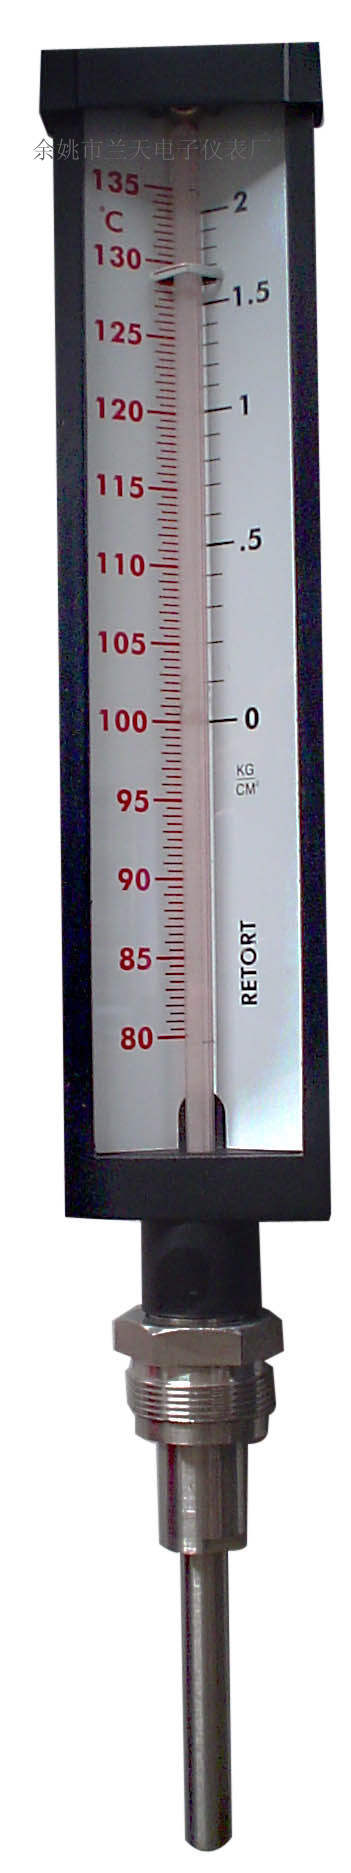 V型工業溫度計